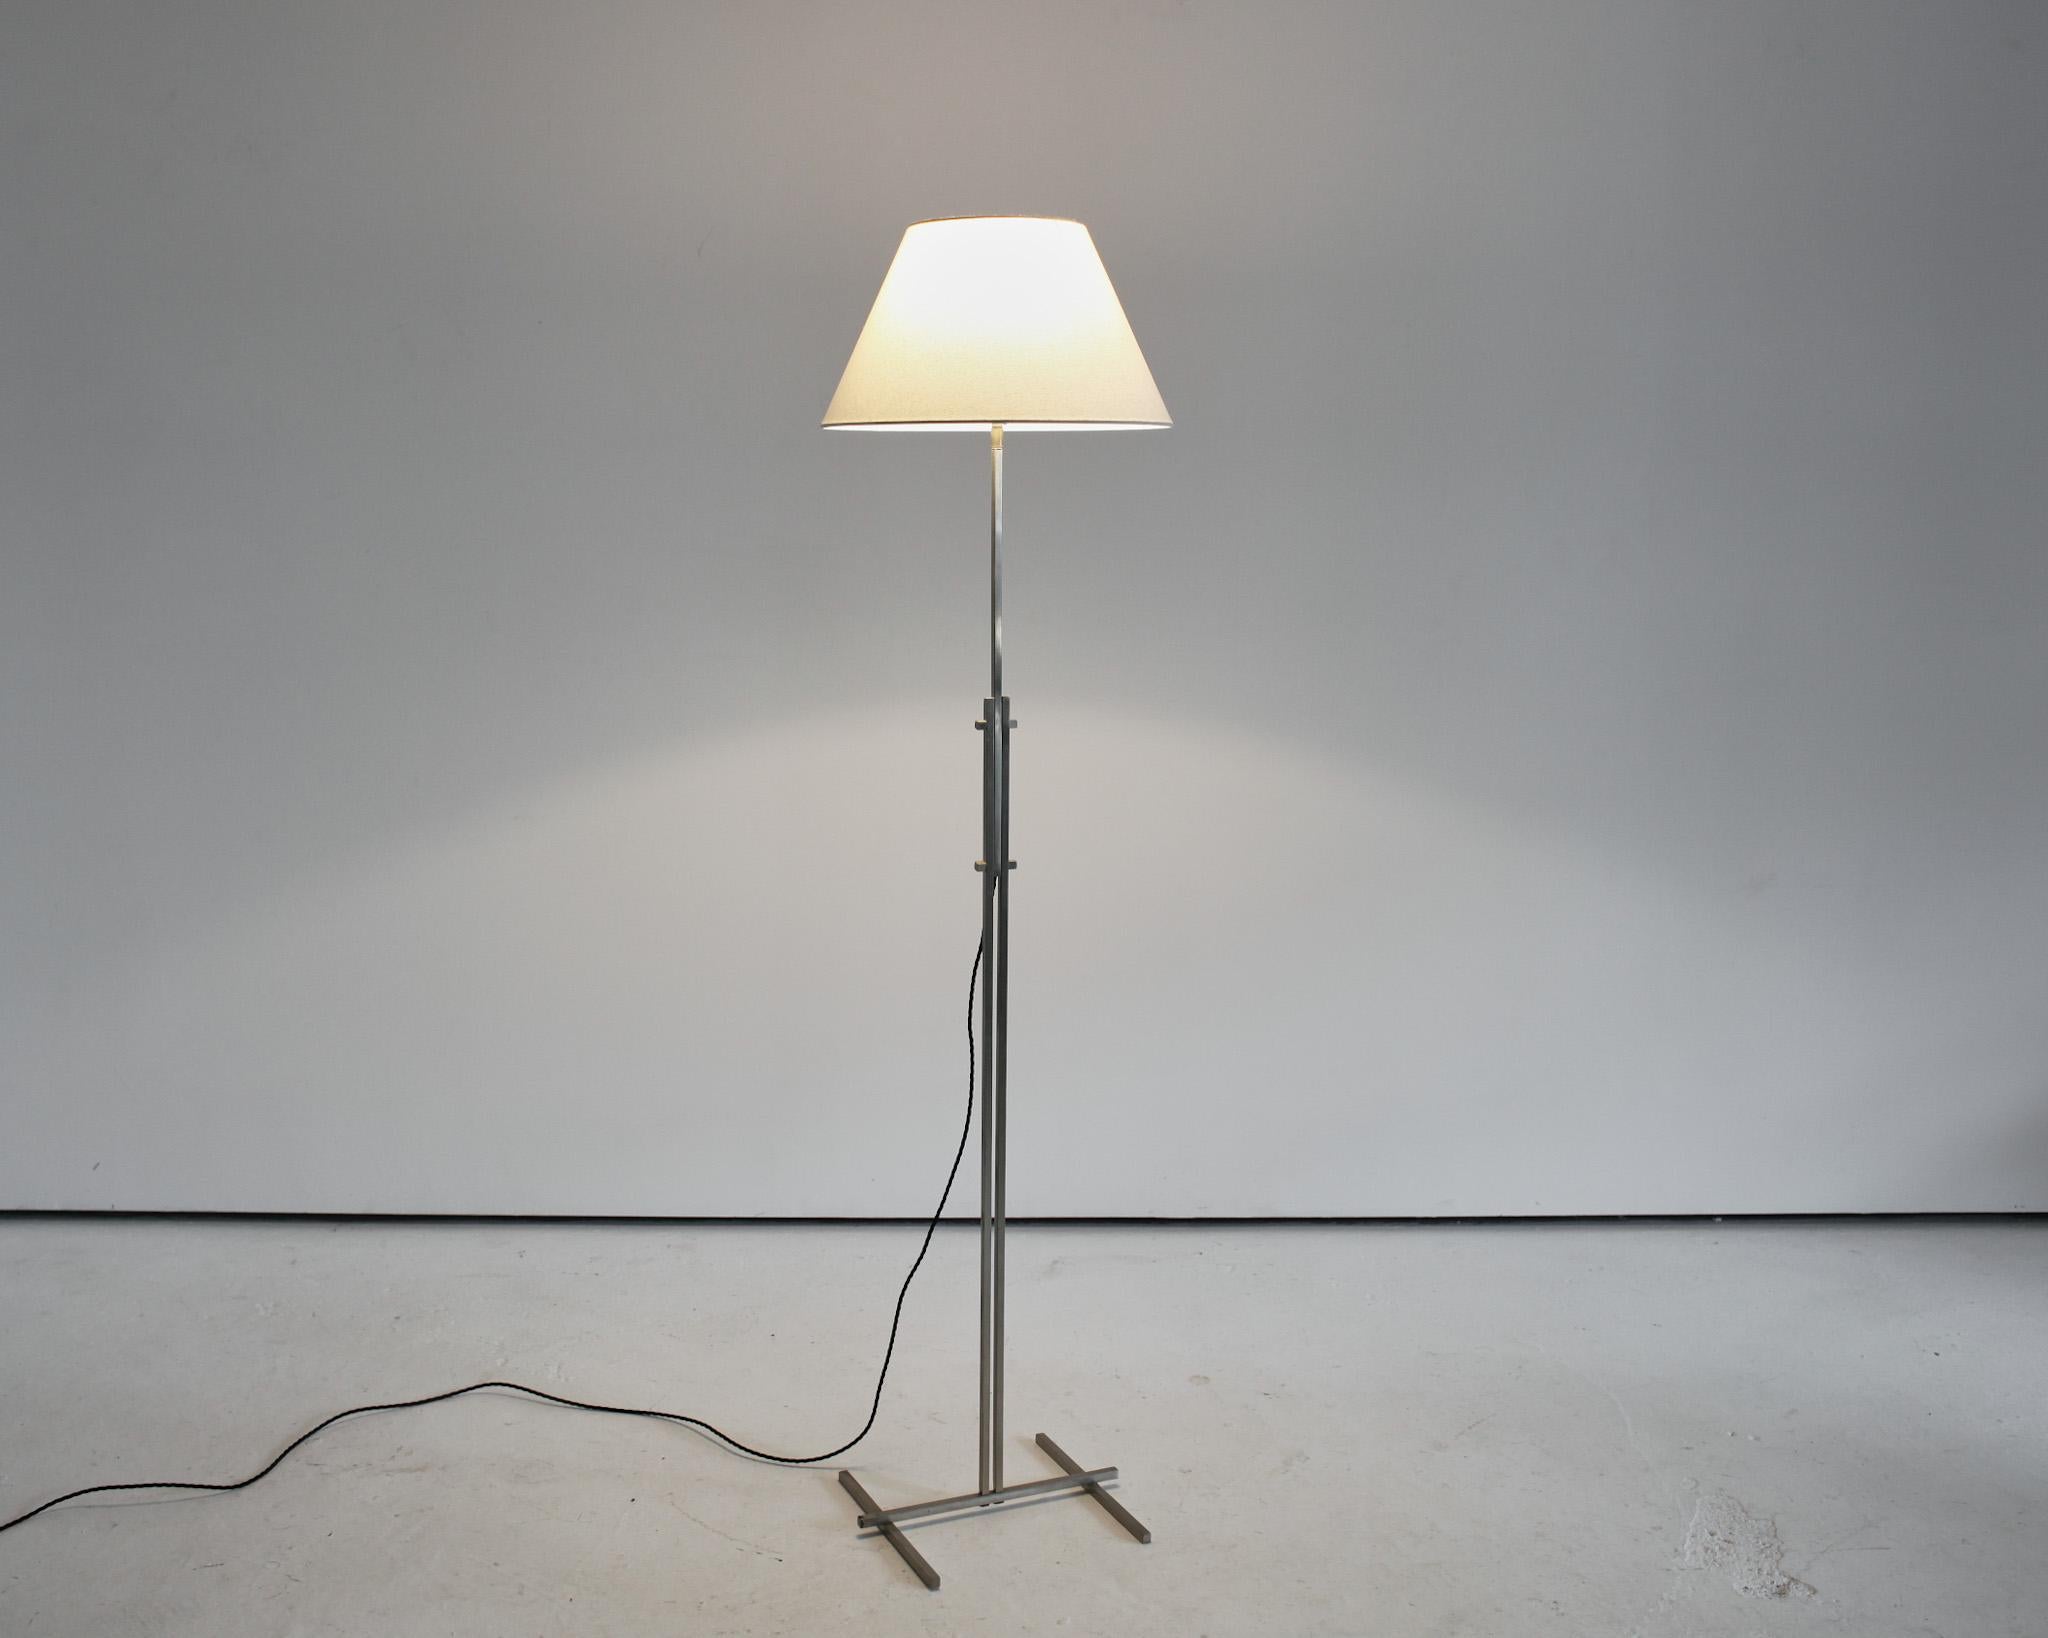 Lampe standard italienne en nickel des années 1970, dont le style rappelle les premières œuvres de l'école Bauhaus.

Légèrement patiné, avec une légère décoloration/perte du nickelage.

Câblage refait par un professionnel.

Photographié avec un